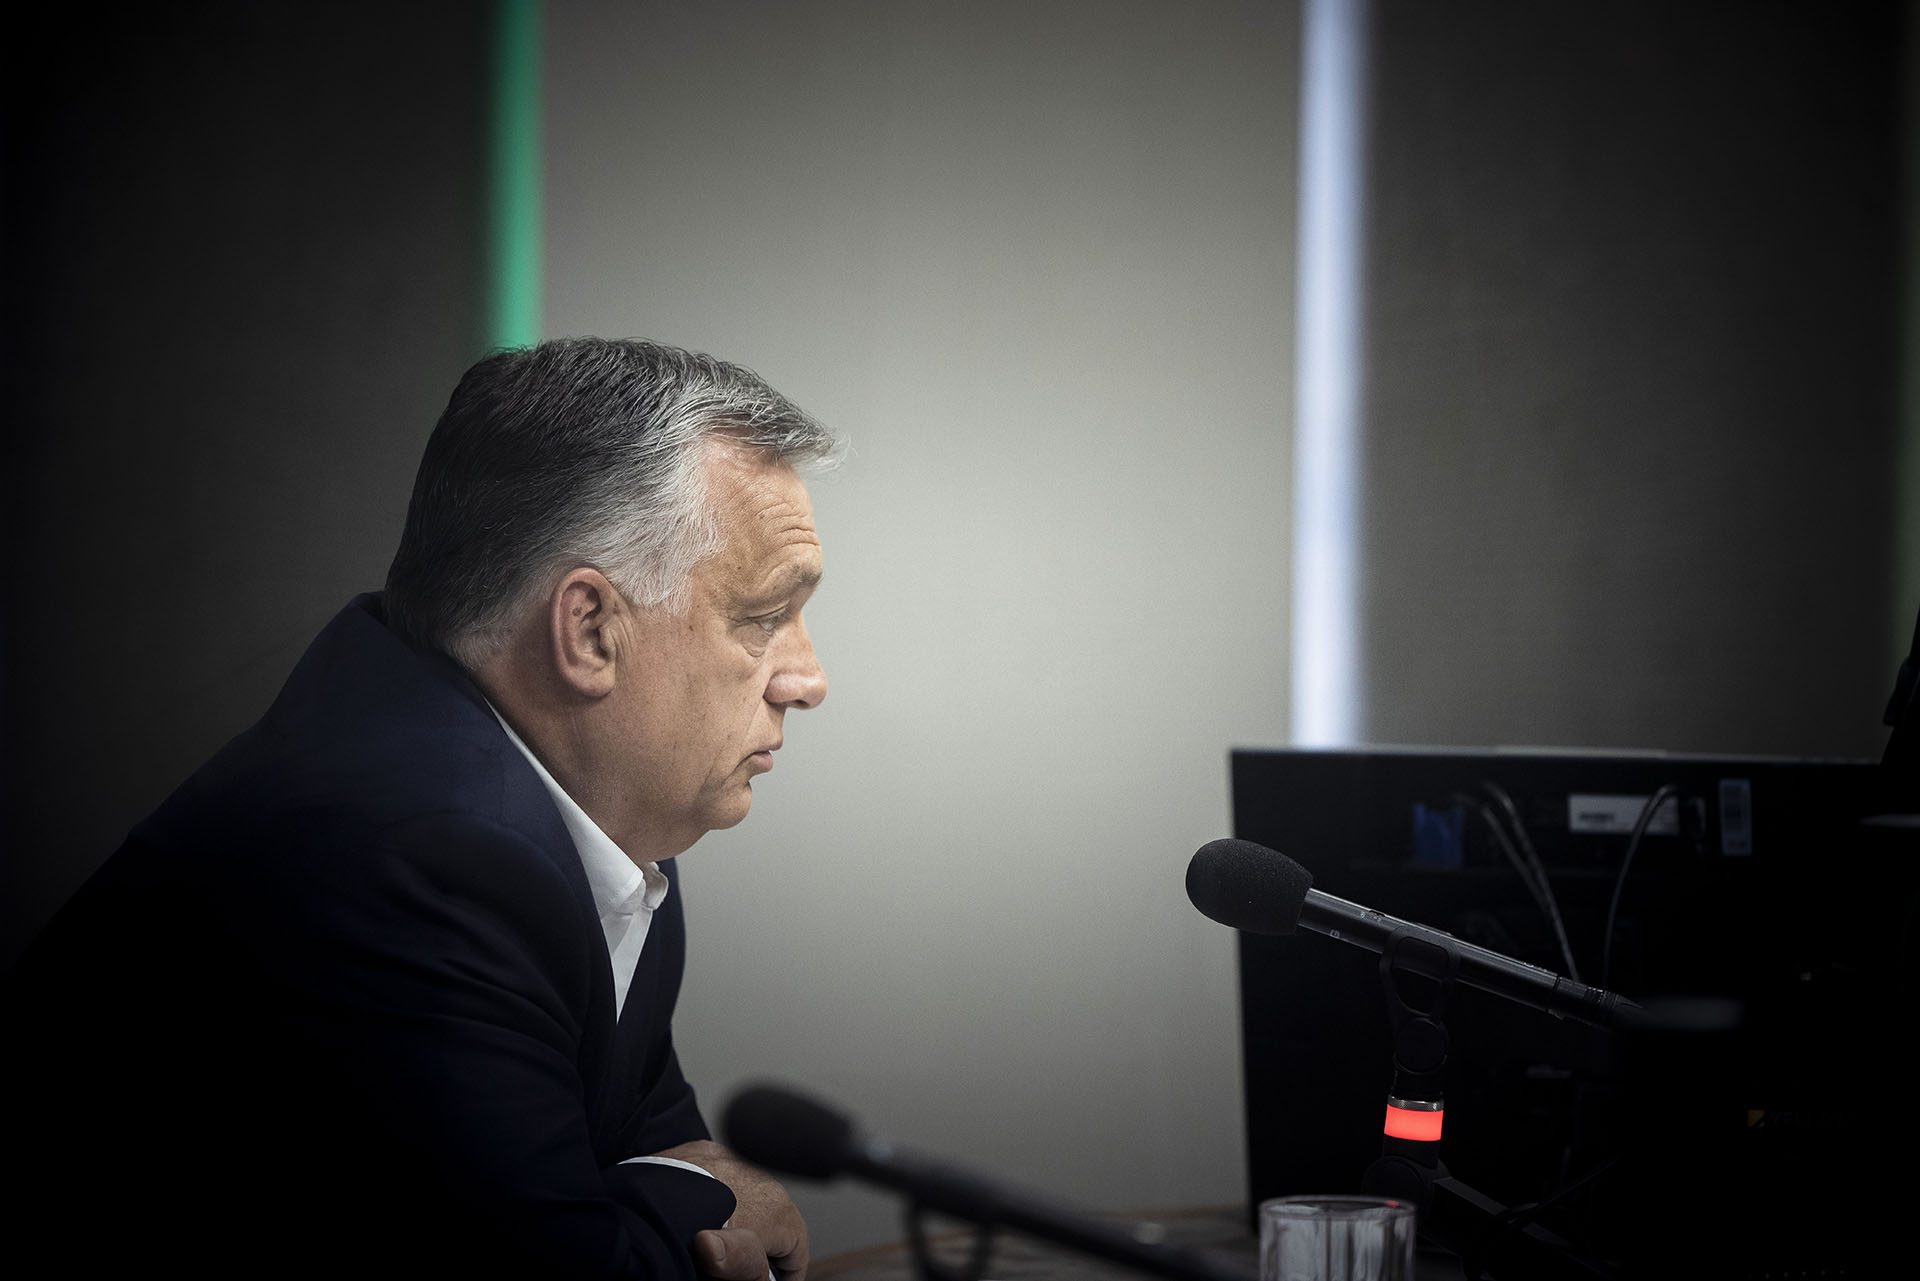 Orbán szerint az '56-os forradalmárok azt akarták elérni az oroszoknál, amit most a magyar kormány